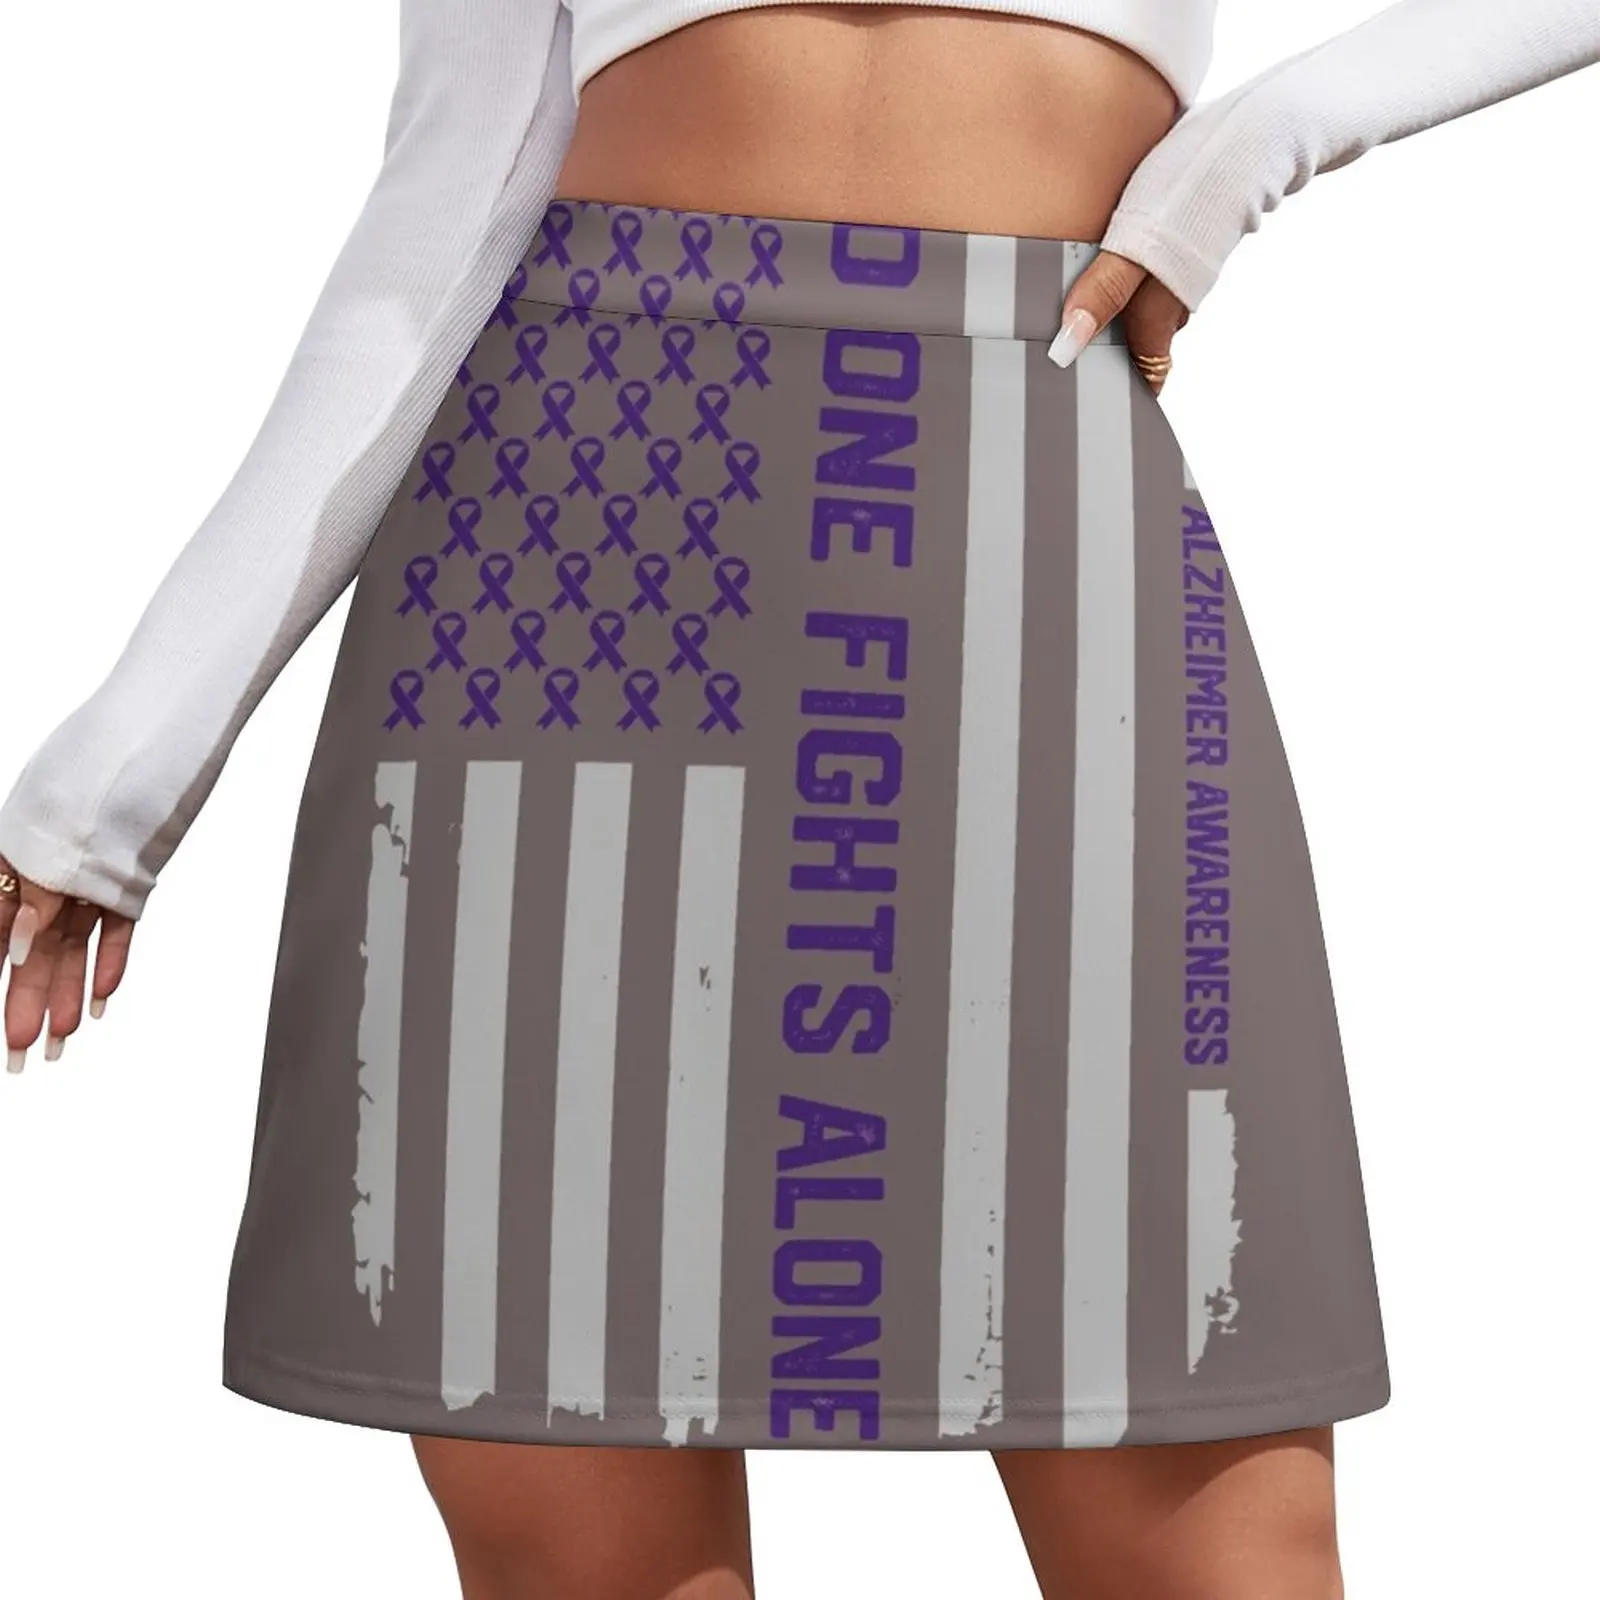 Alzheimer's Awareness Shirts - Alzheimers Awareness American Flag Mini Skirt shorts kawaii skirt